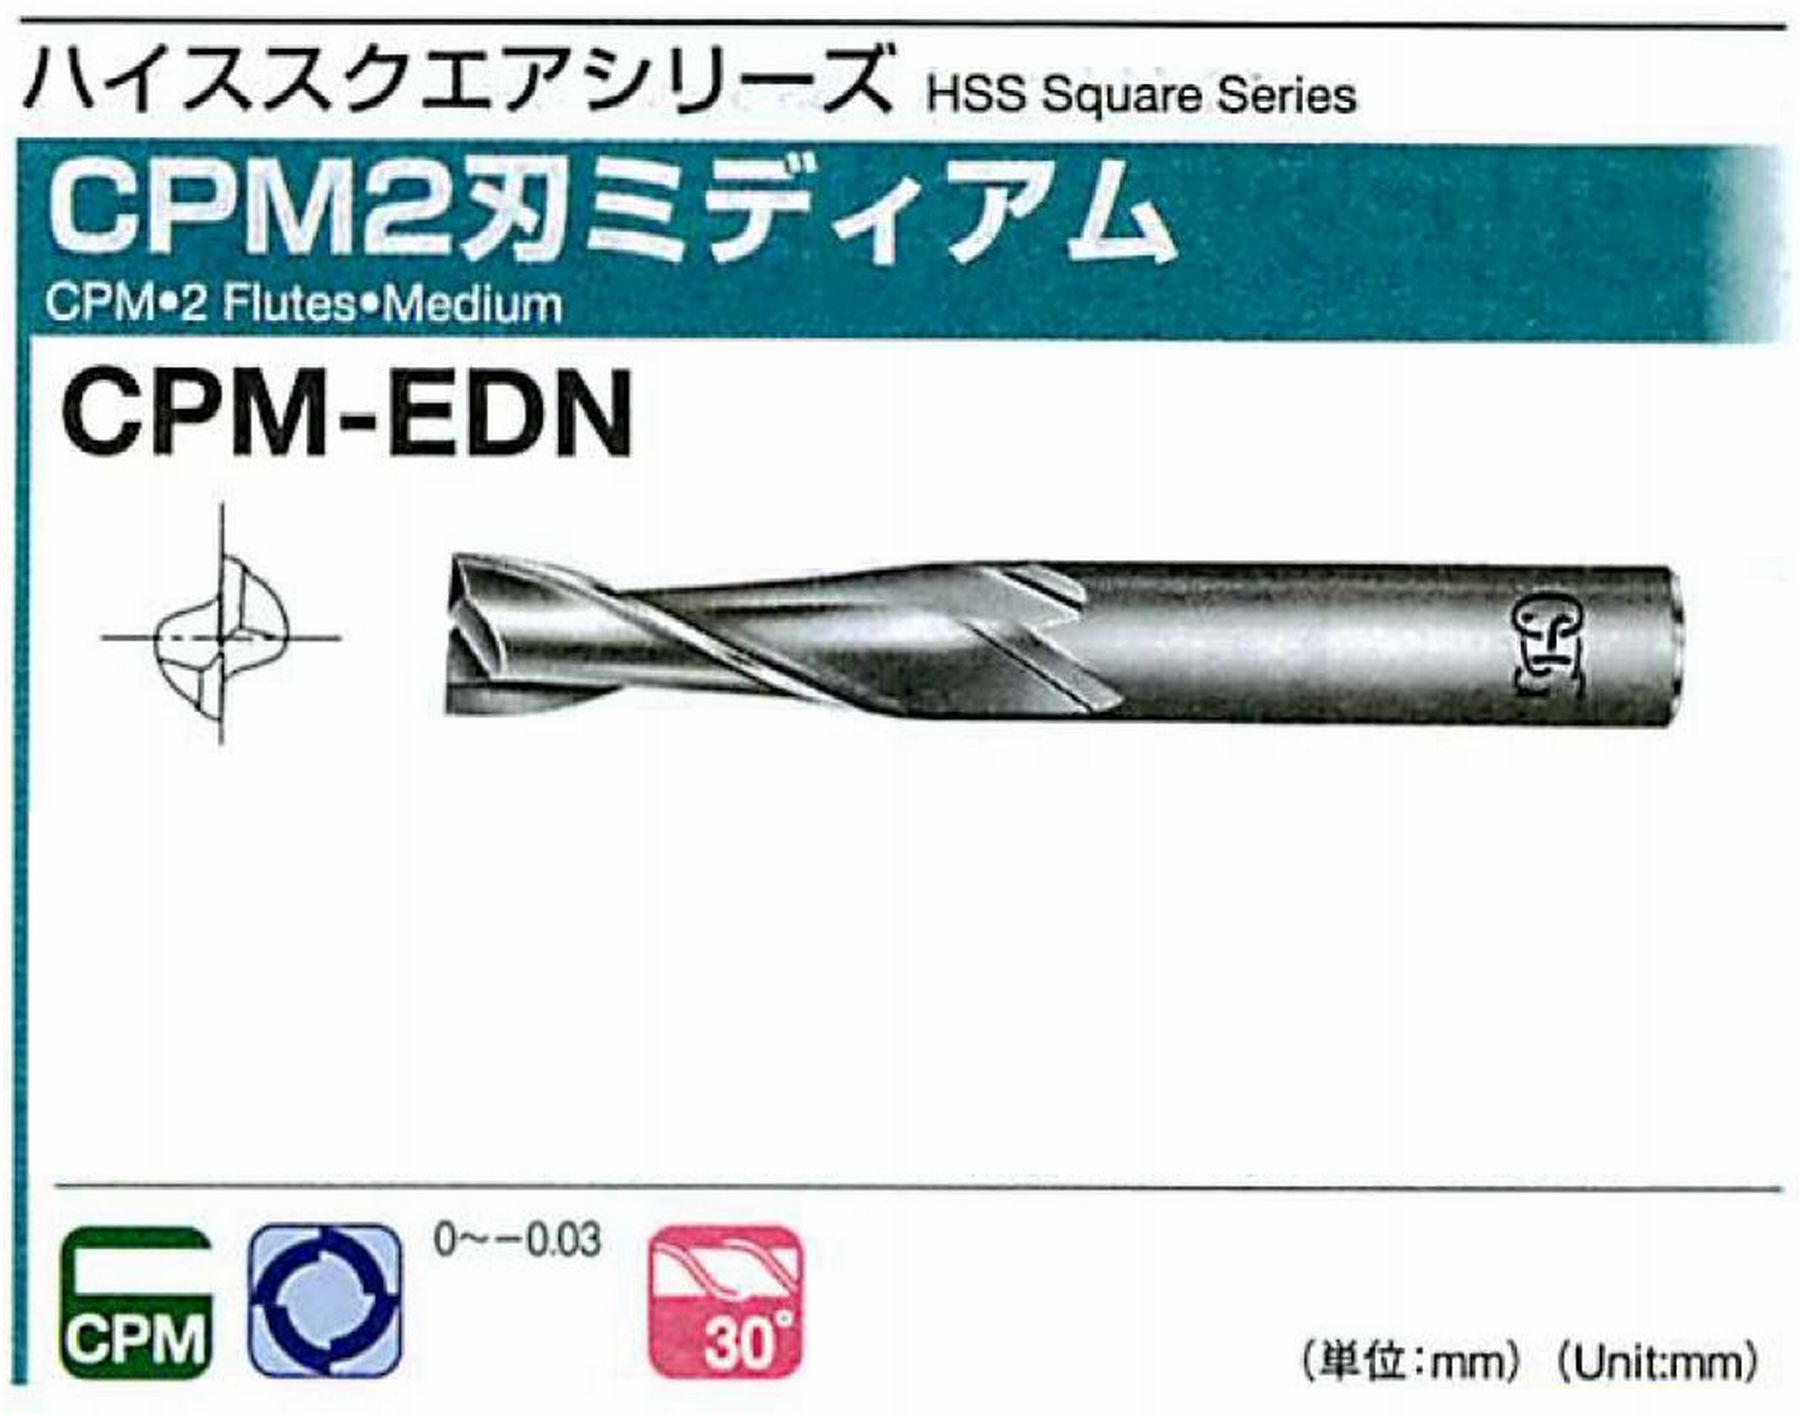 オーエスジー/OSG CPM2刃 ミディアム CPM-EDN 外径8 全長60 刃長20 シャンク径10mm